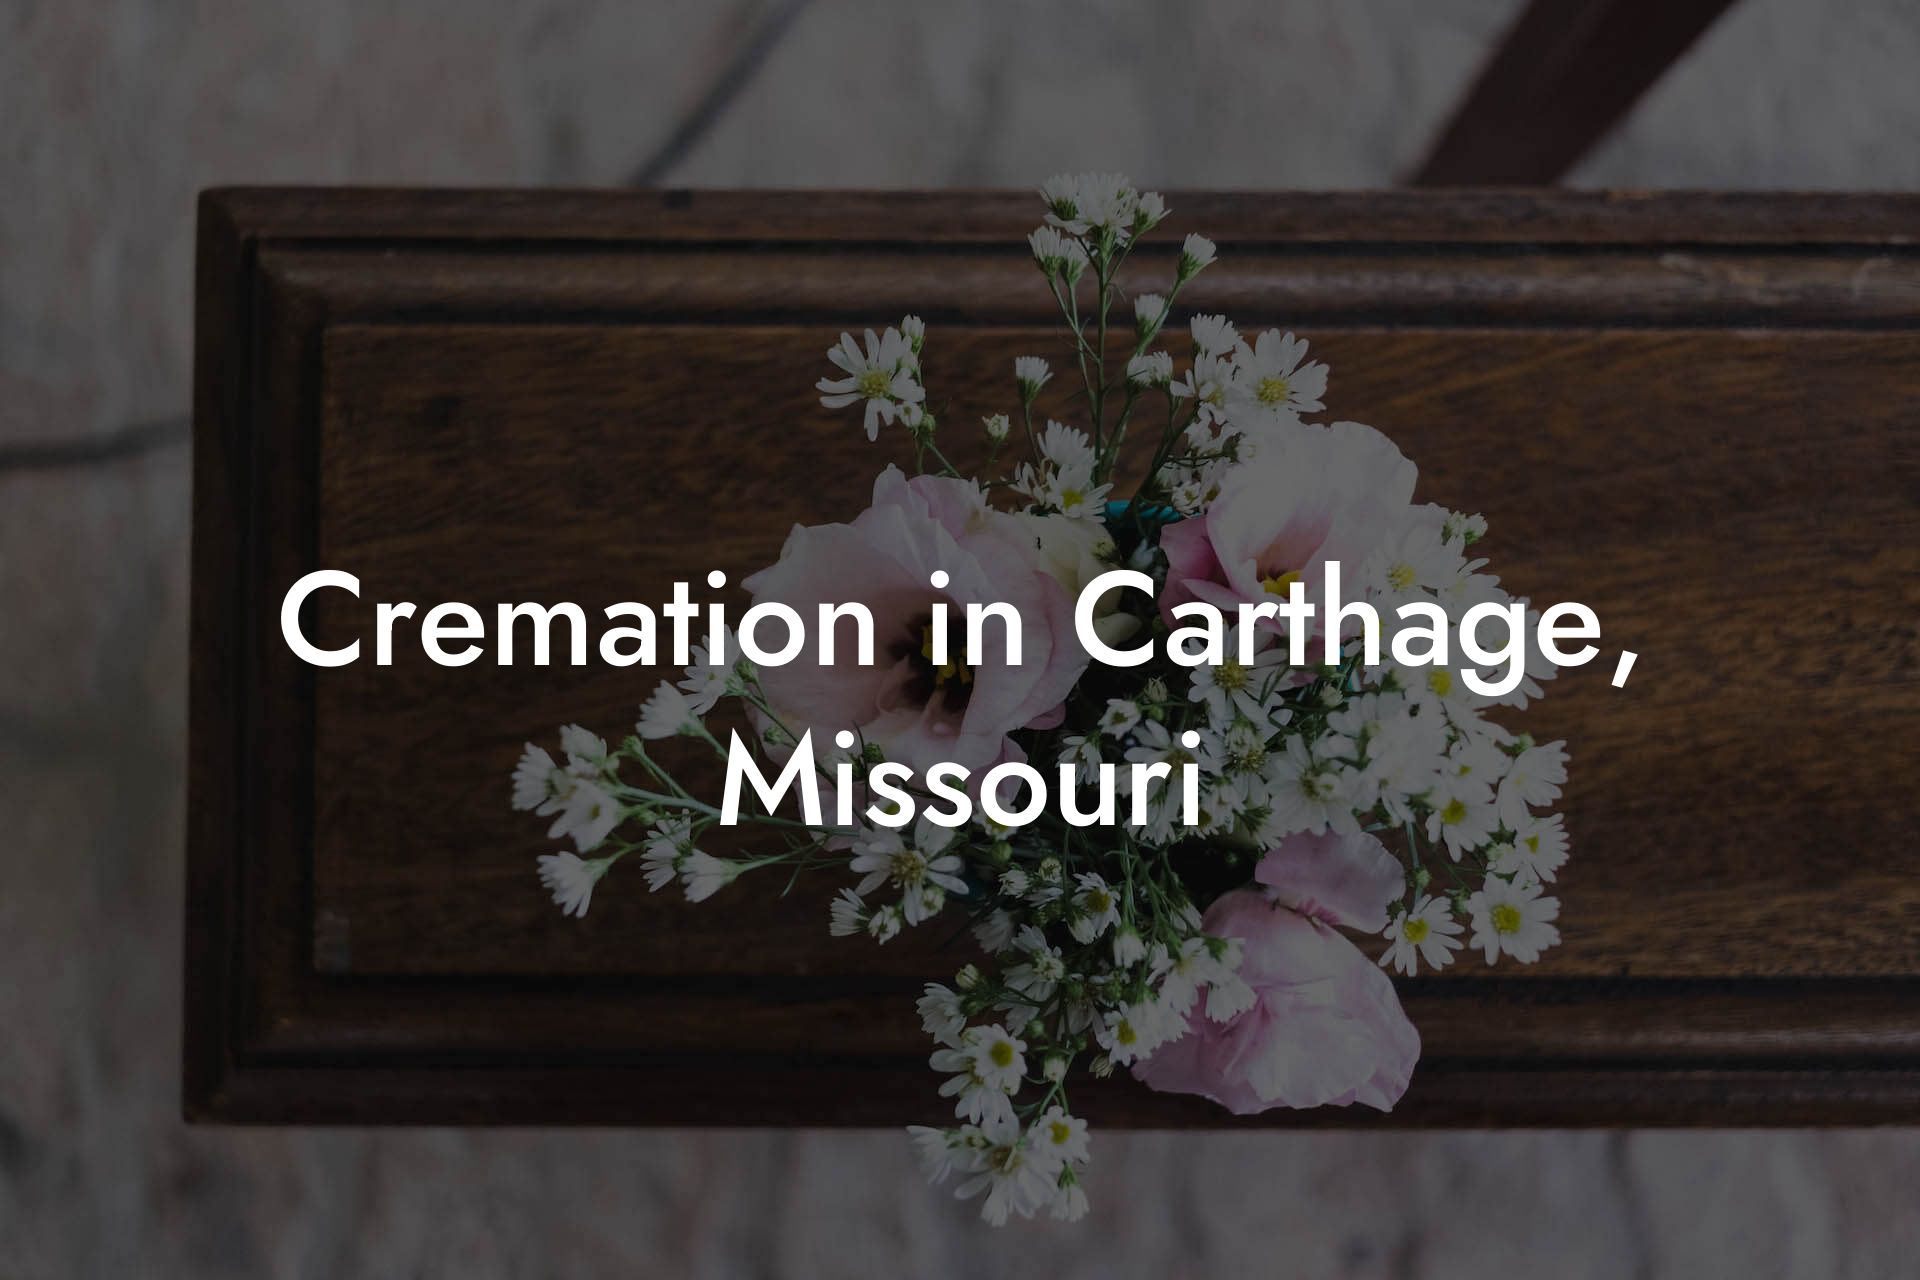 Cremation in Carthage, Missouri